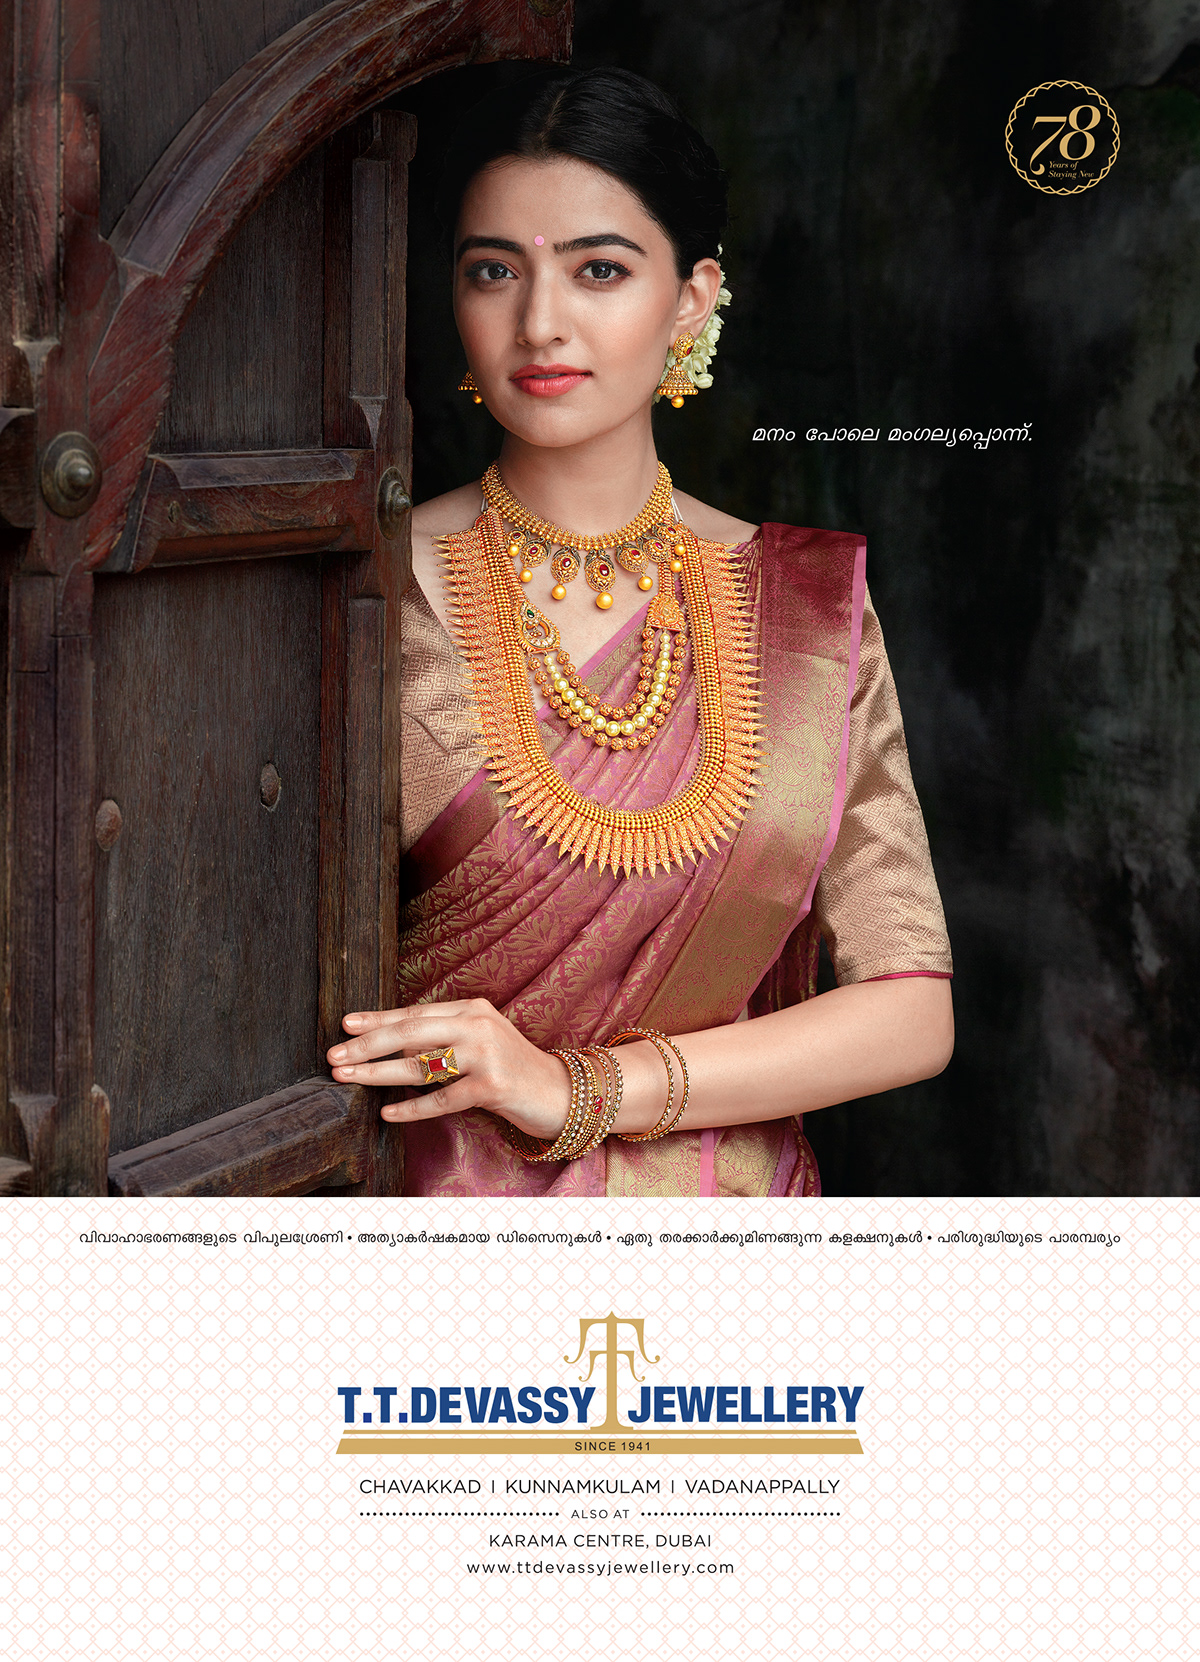 Swati Shandilya - TT Devassy Jewellery